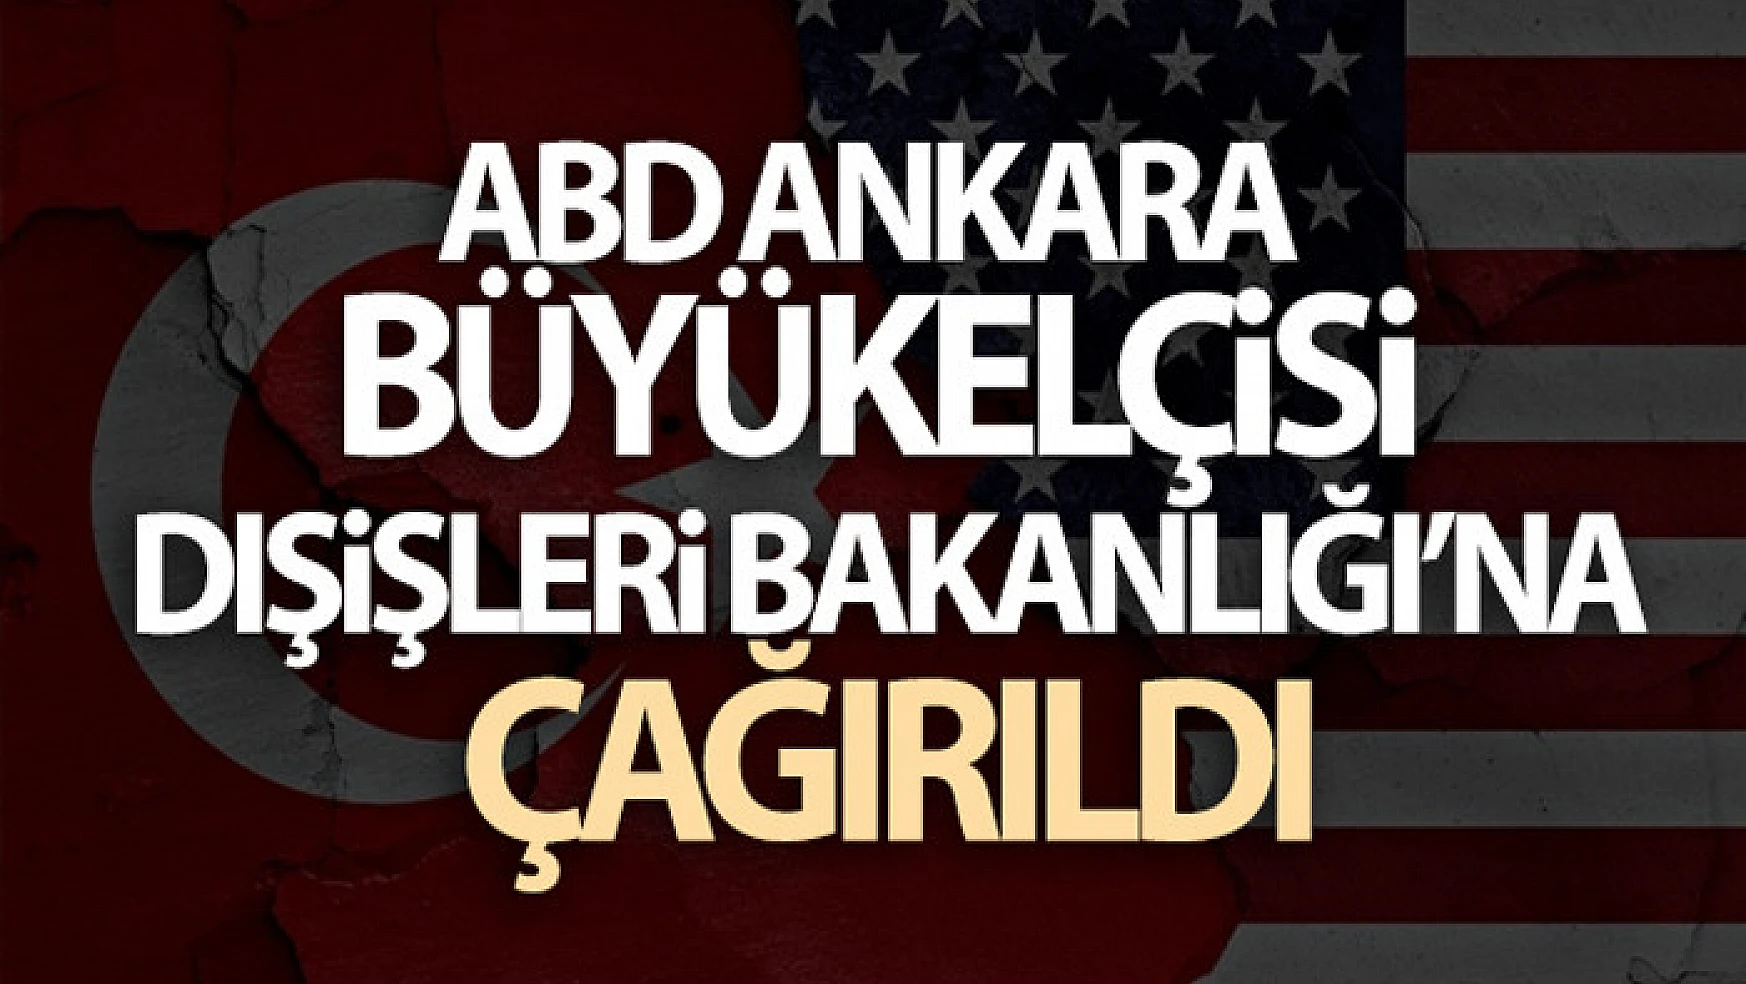 ABD Ankara Büyükelçisi Dışişleri Bakanlığı'na çağırıldı